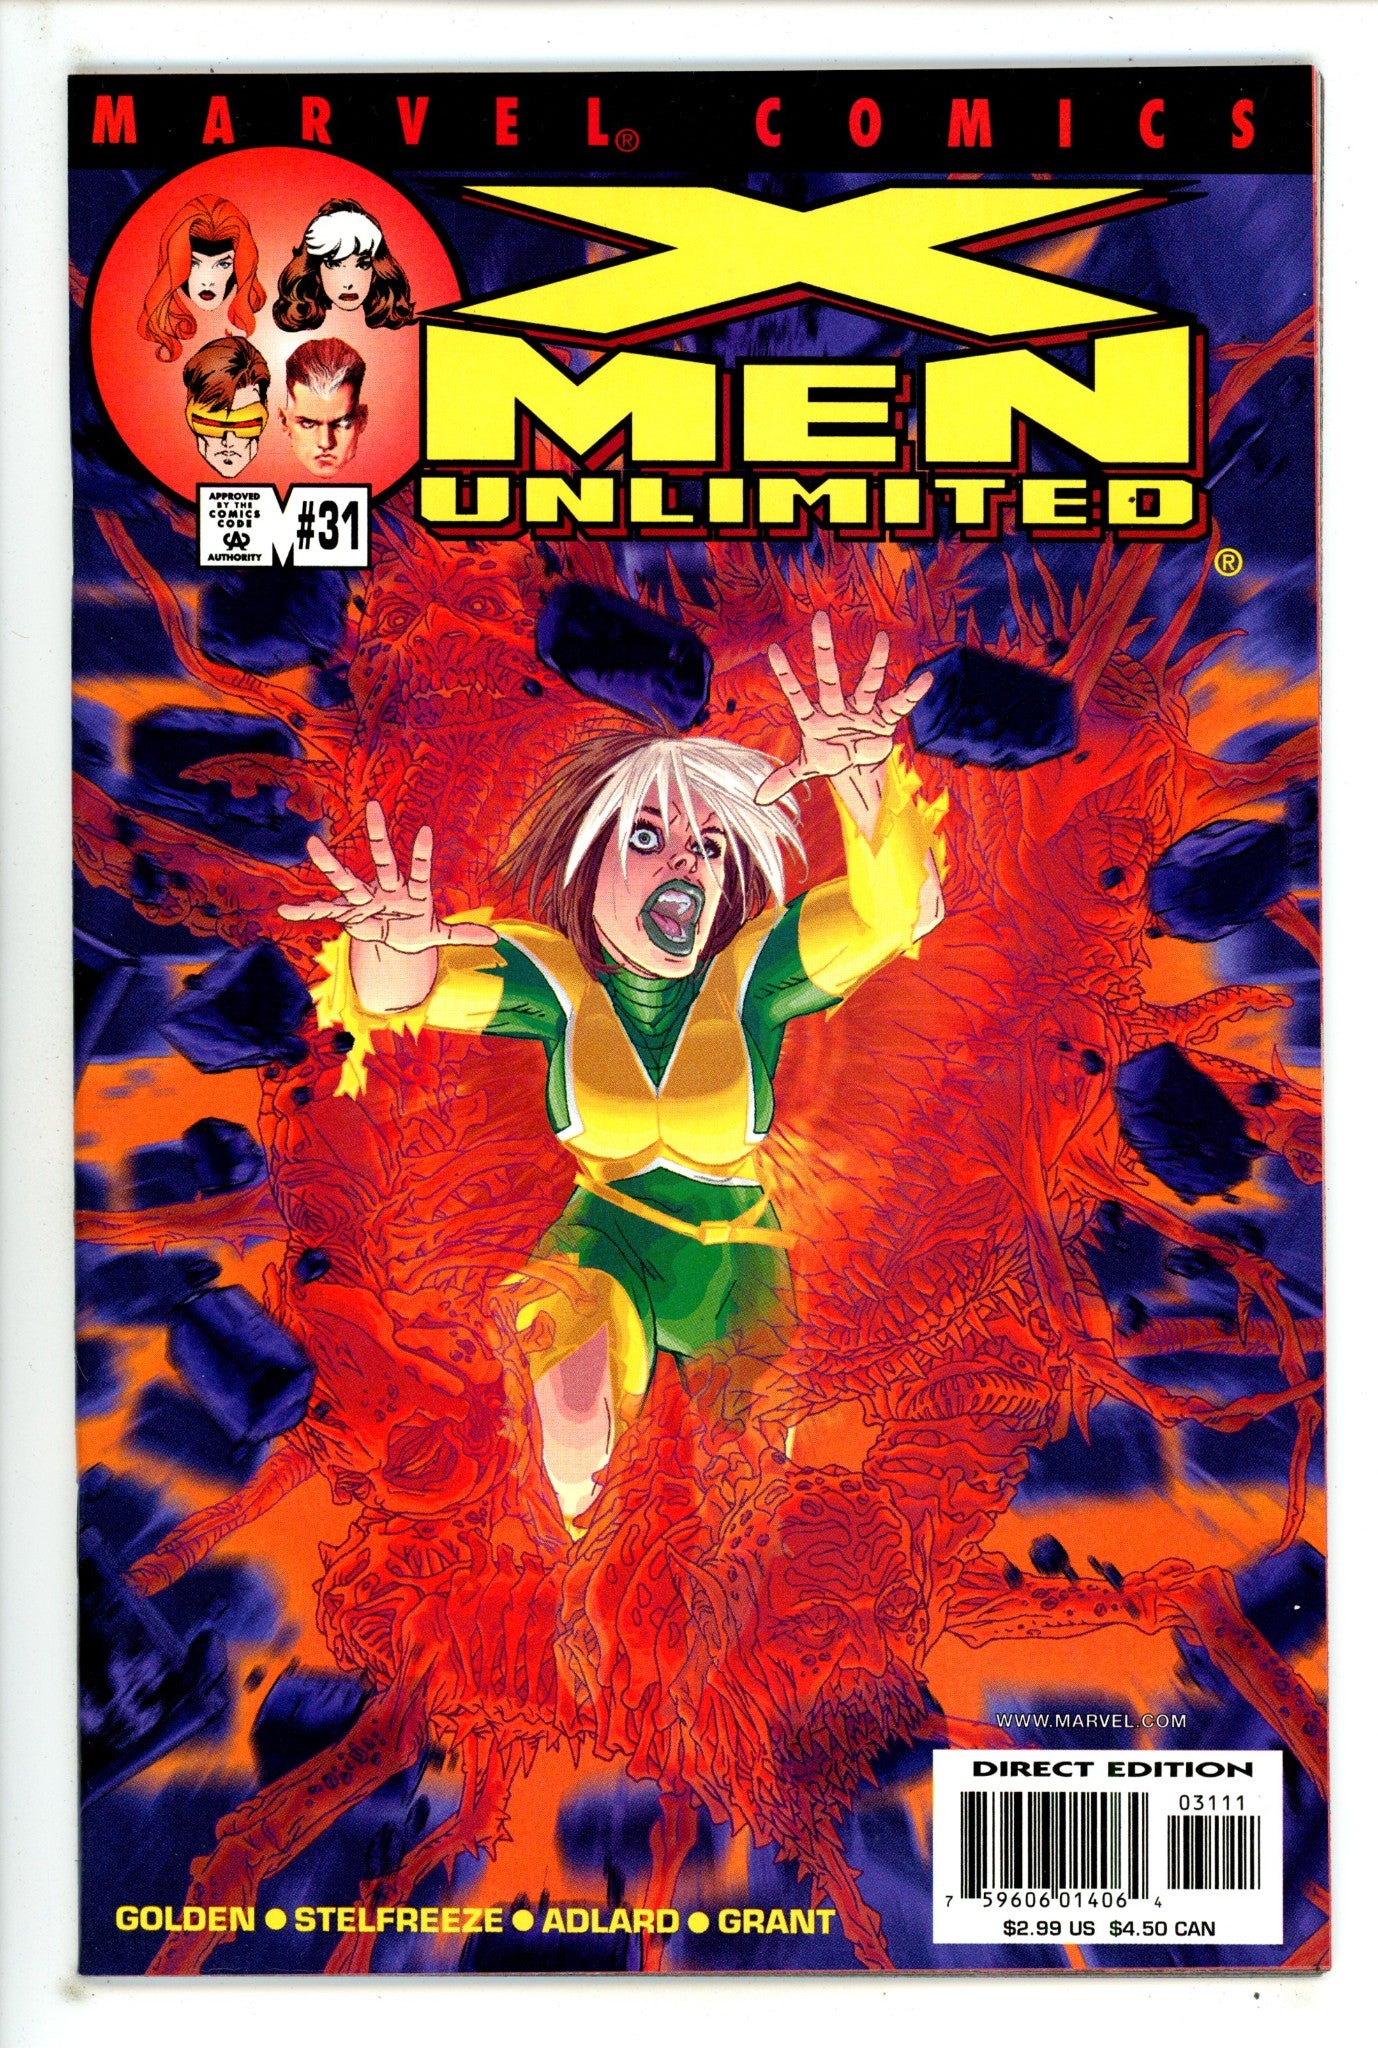 X-Men Unlimited Vol 1 31 High Grade (2001) 